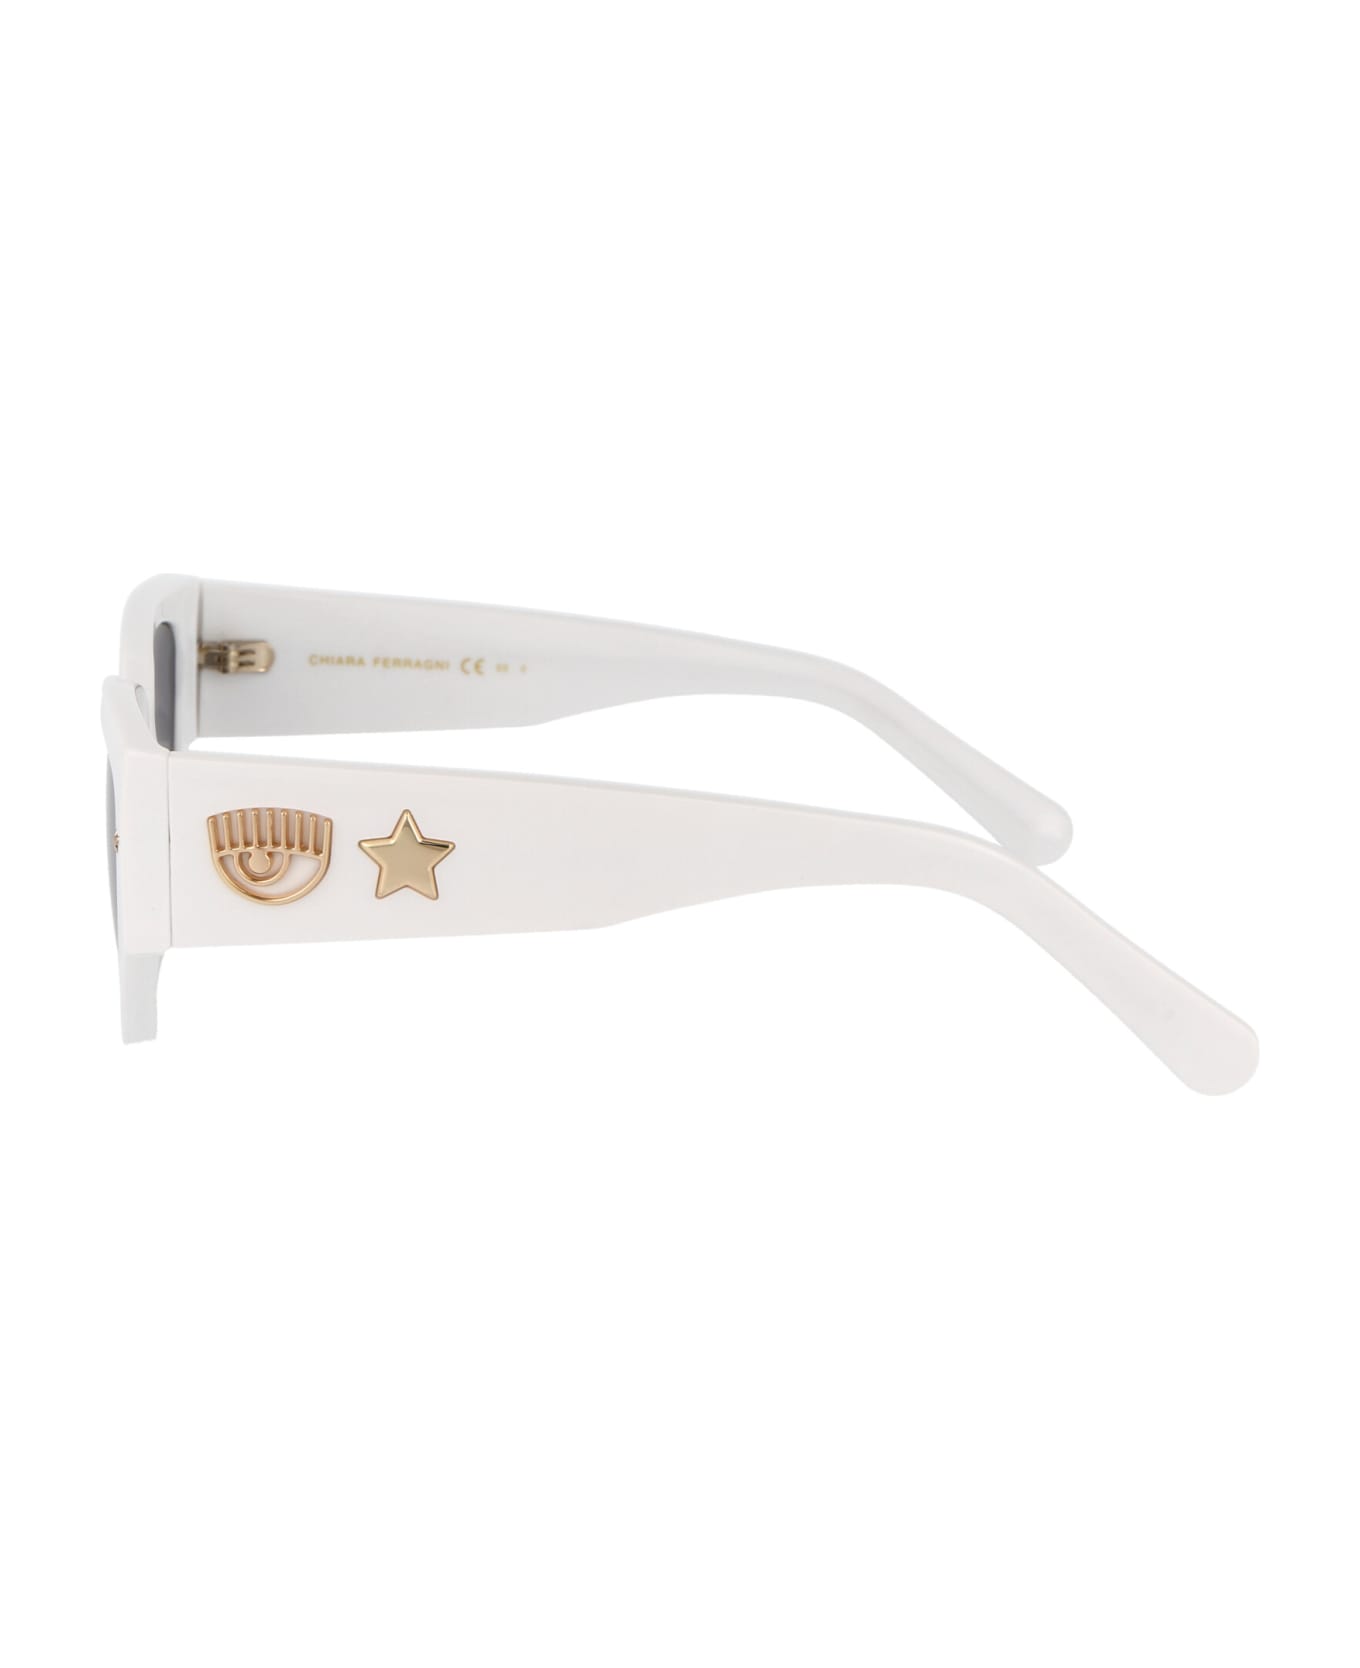 Chiara Ferragni Cf 7014/s Sunglasses - VK6IR WHITE サングラス